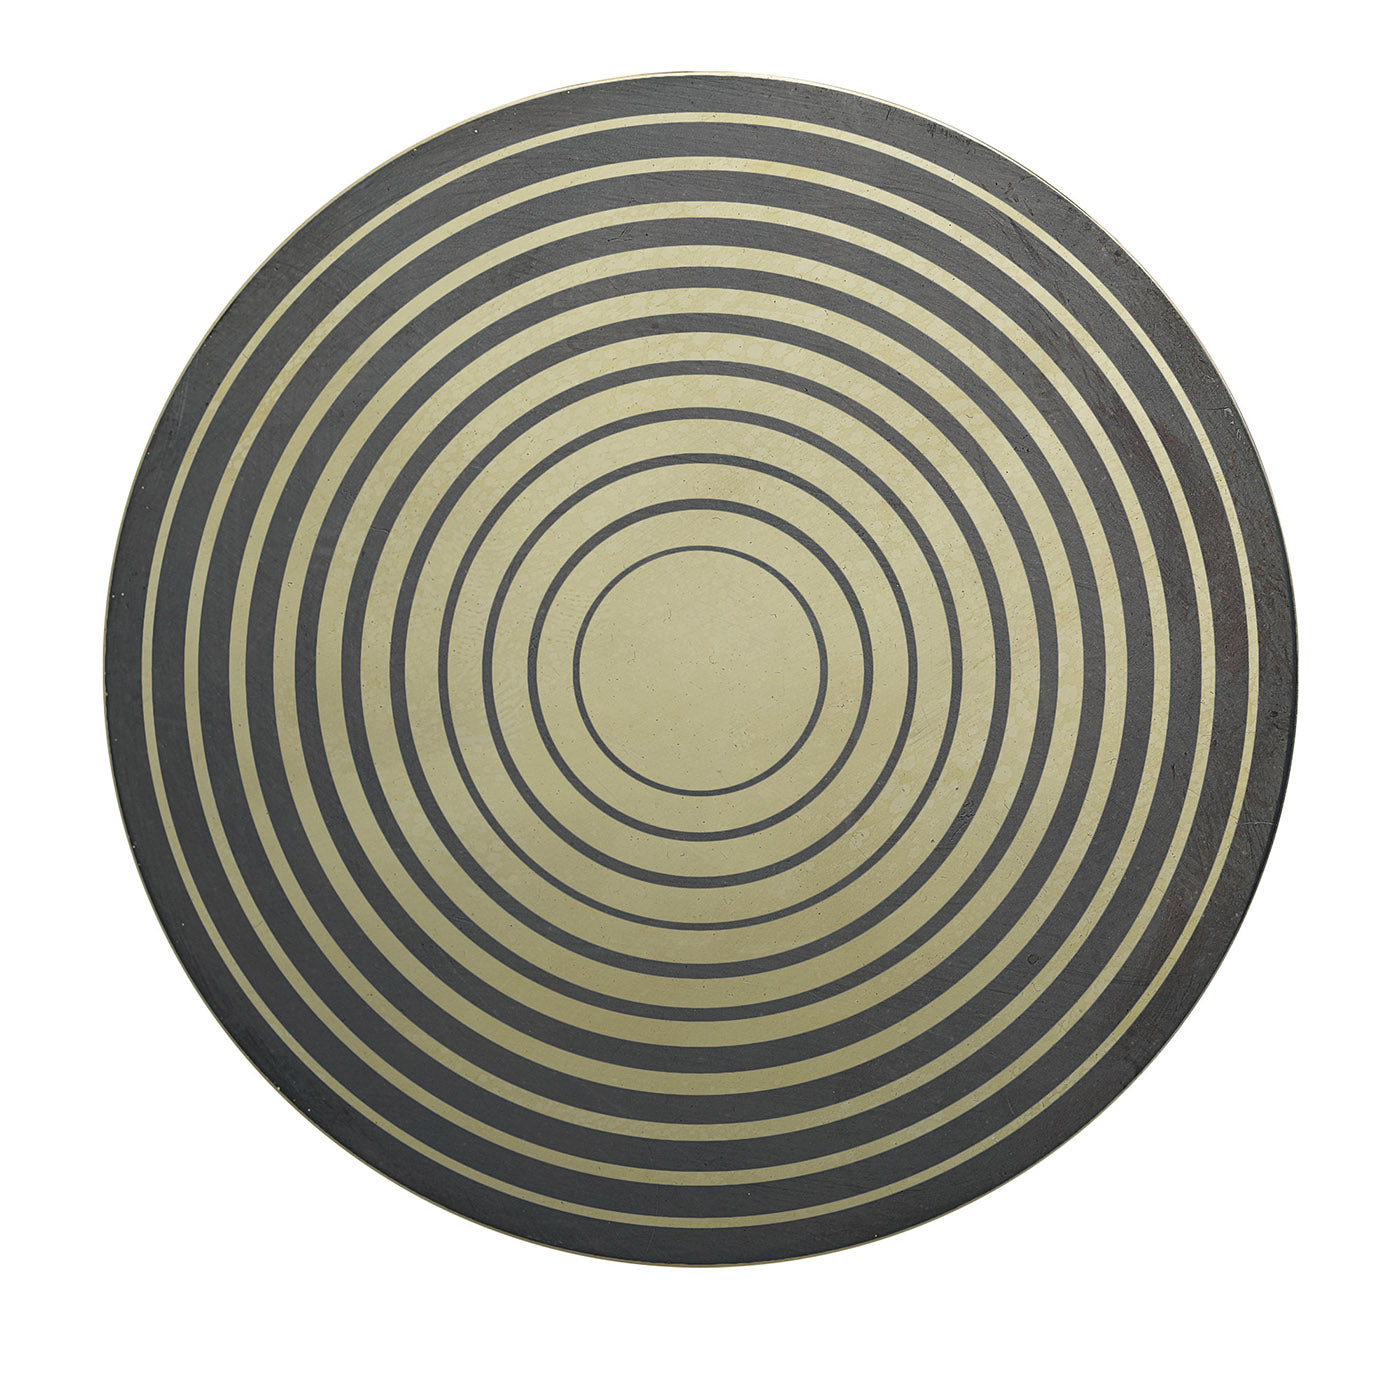 Aniconico Decorative Disk #8 - Main view